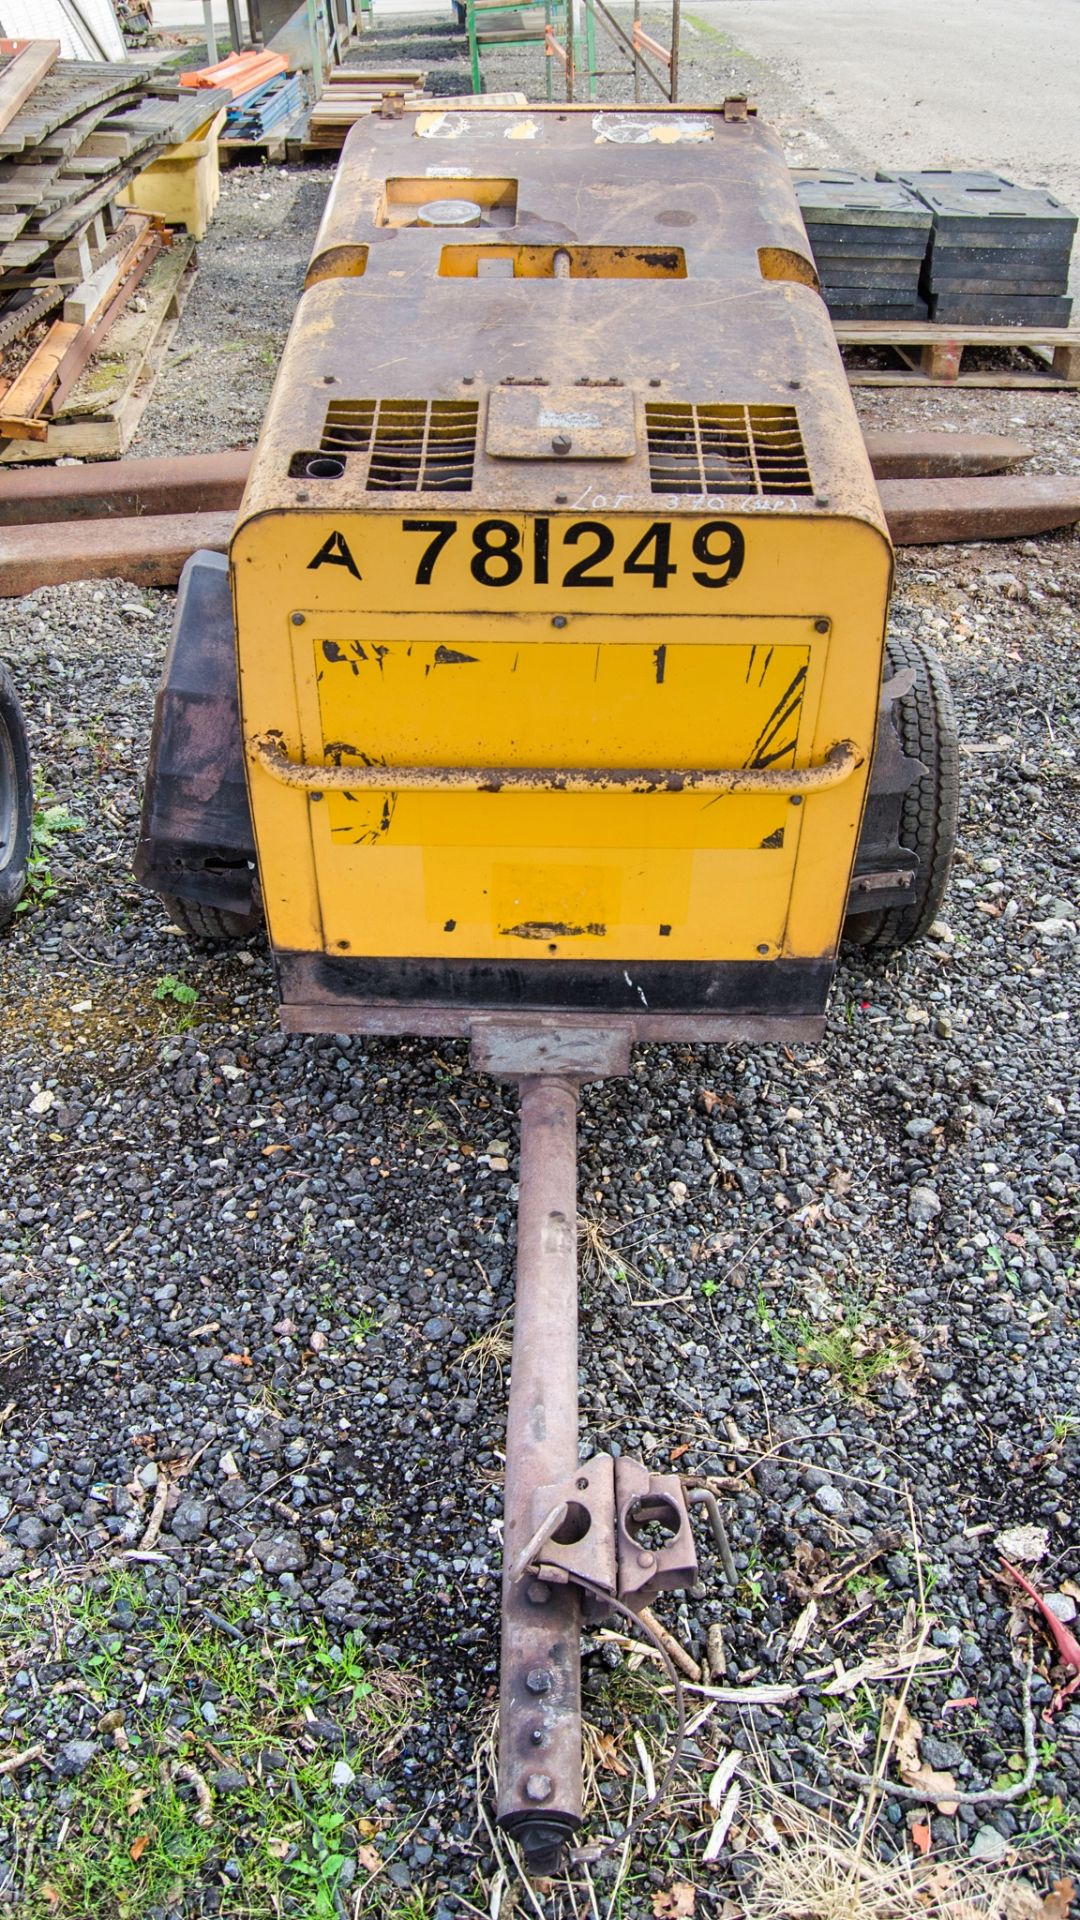 Arc Gen Weldmaker 300 AVC diesel driven mobile welder/generator Year: 2015 S/N: 1302731 Recorded - Image 3 of 7